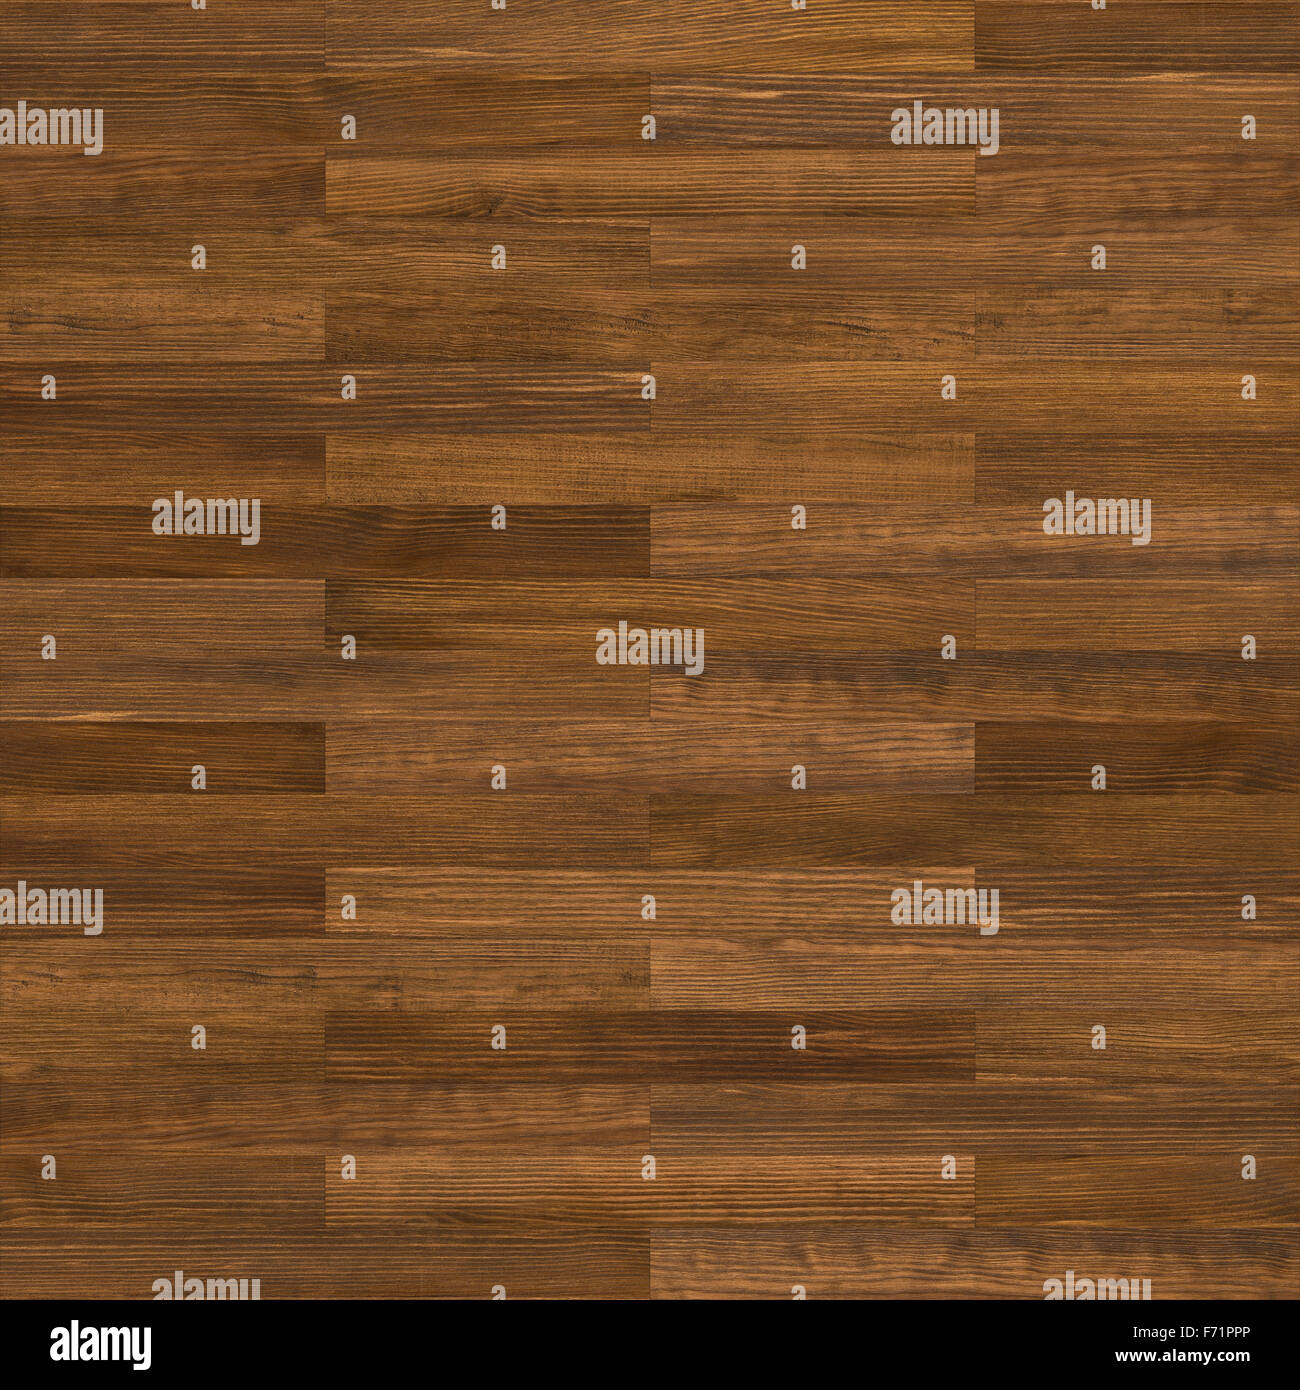 Perfecta textura de madera marrón. Puede utilizarse como patrón de suelo, pared o fondo de la tabla. Foto de stock